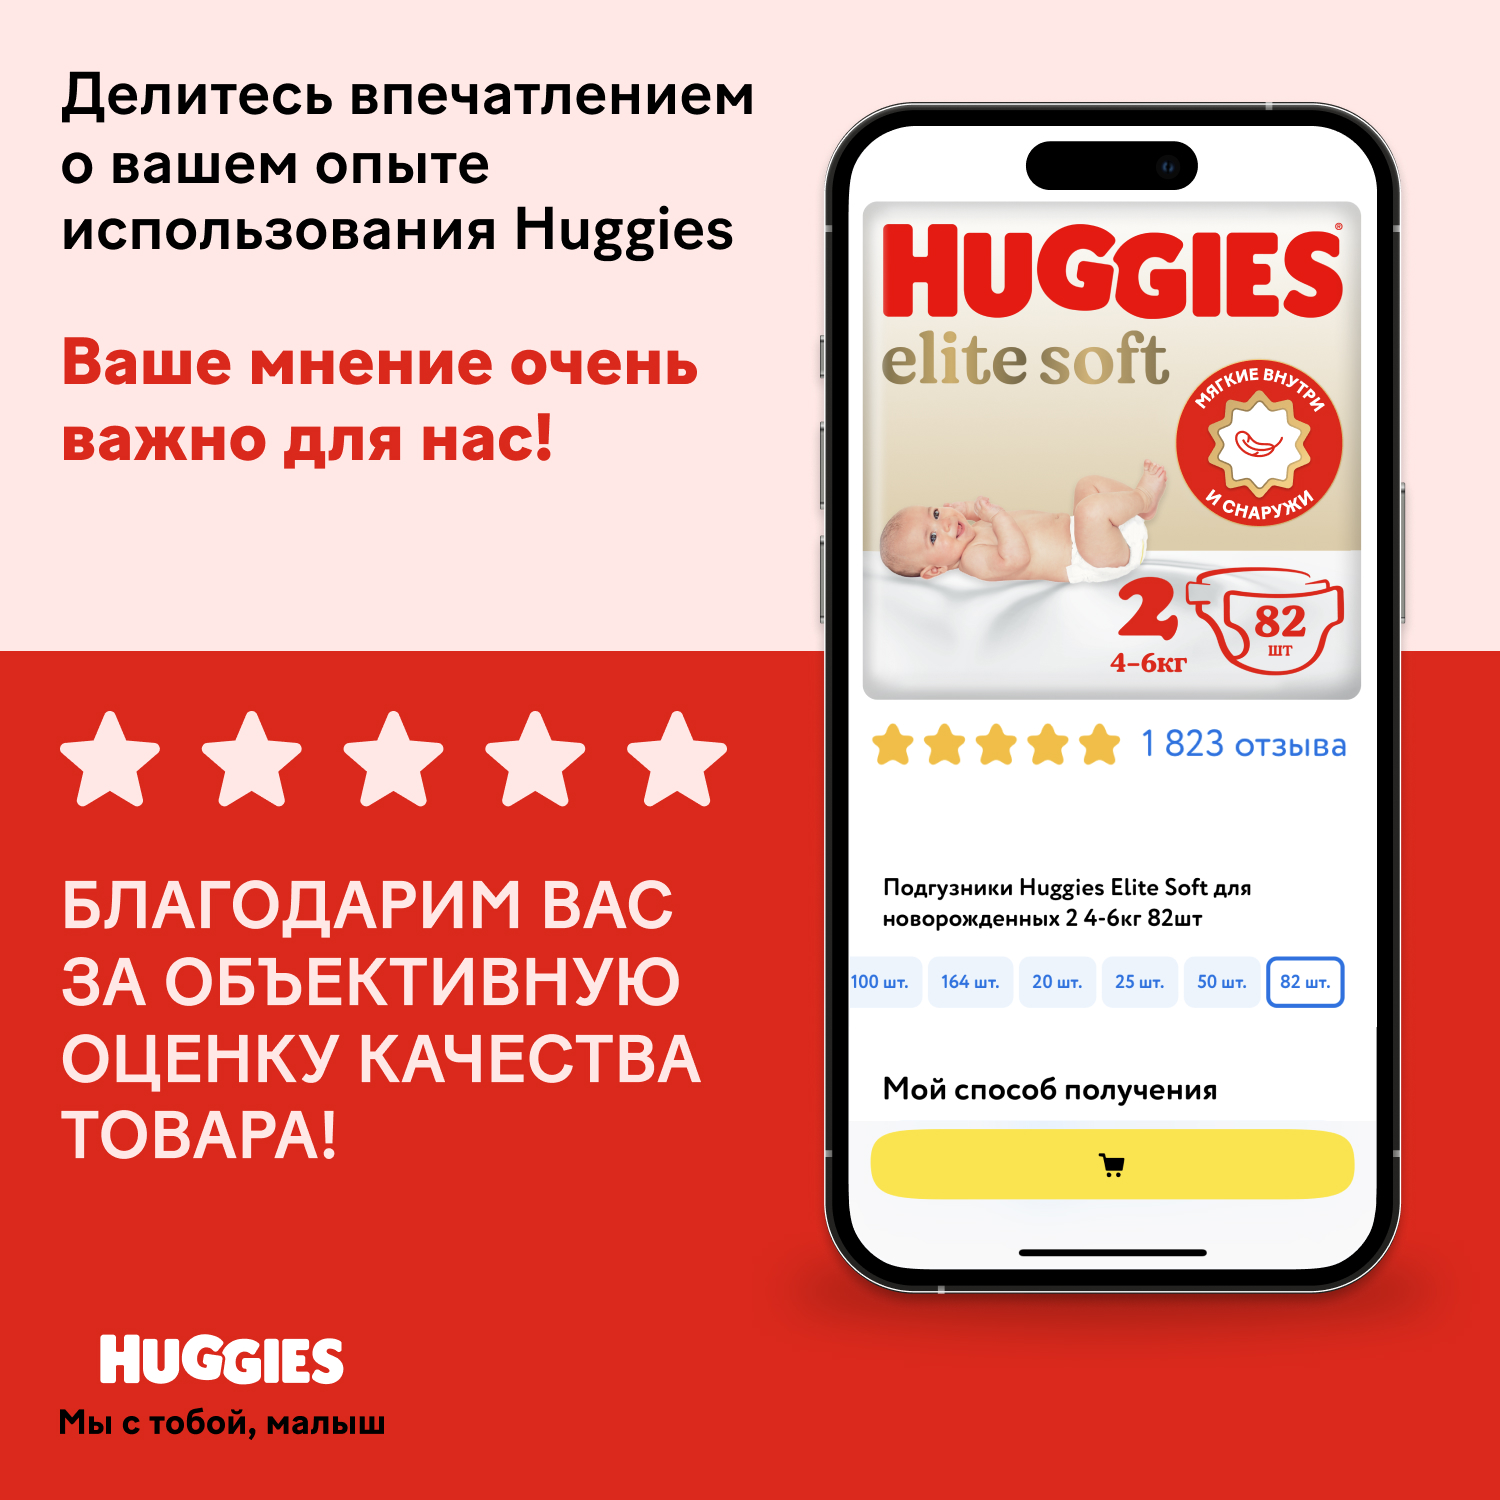 Подгузники Huggies Elite Soft для новорожденных 2 4-6кг 50шт - фото 21